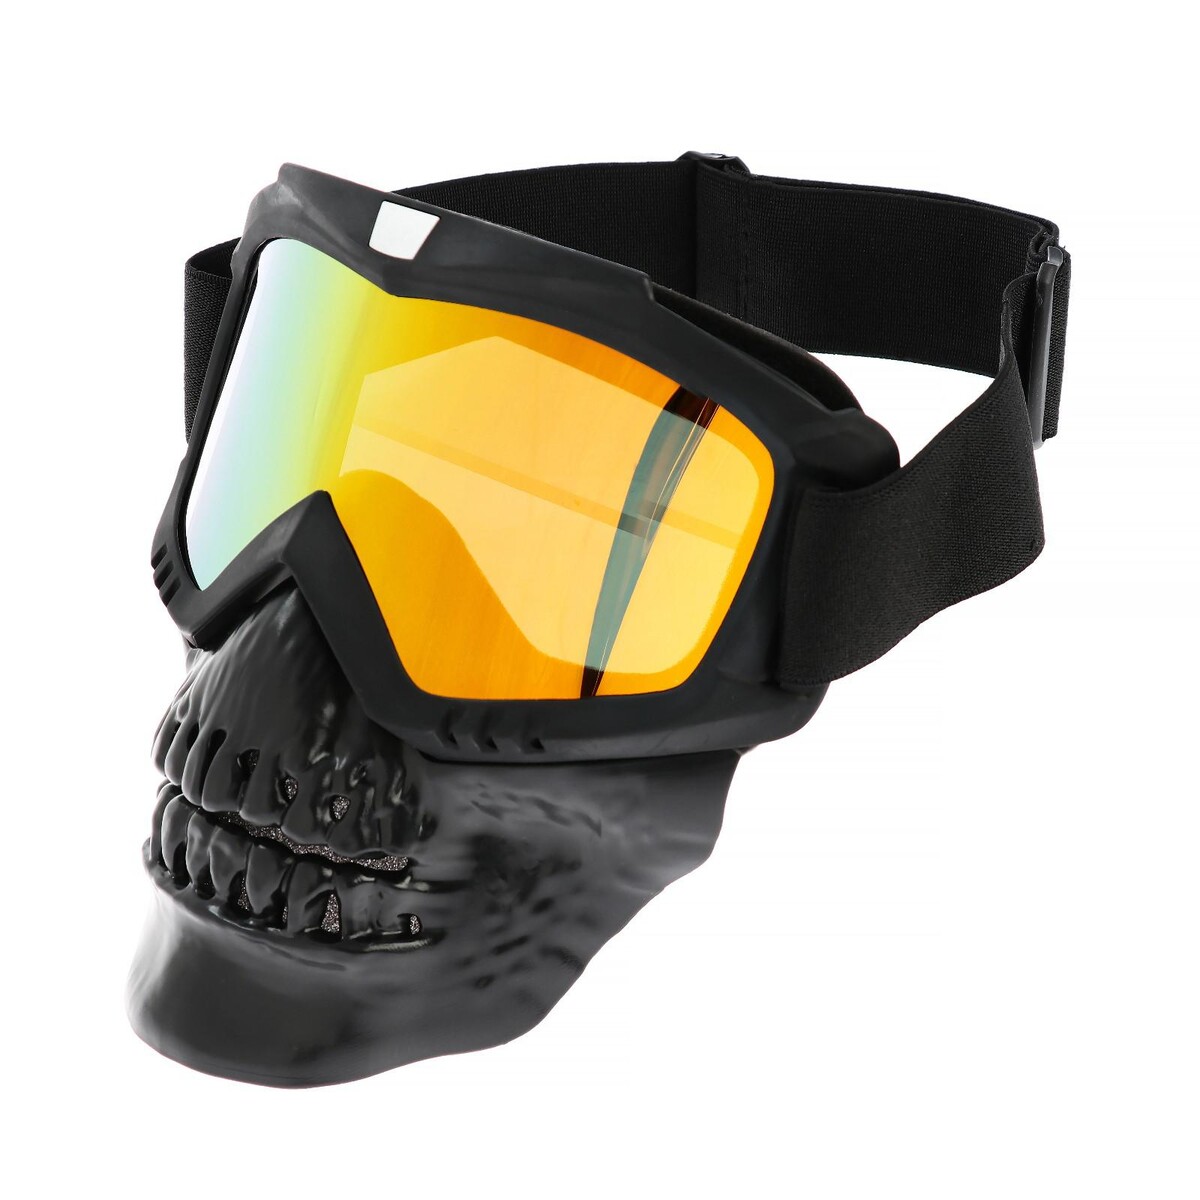 Очки-маска для езды на мототехнике, разборные, визор оранжевый, цвет черный очки велосипедные bbb fullview pc smoke orange mlc lens оранжевый bsg 53